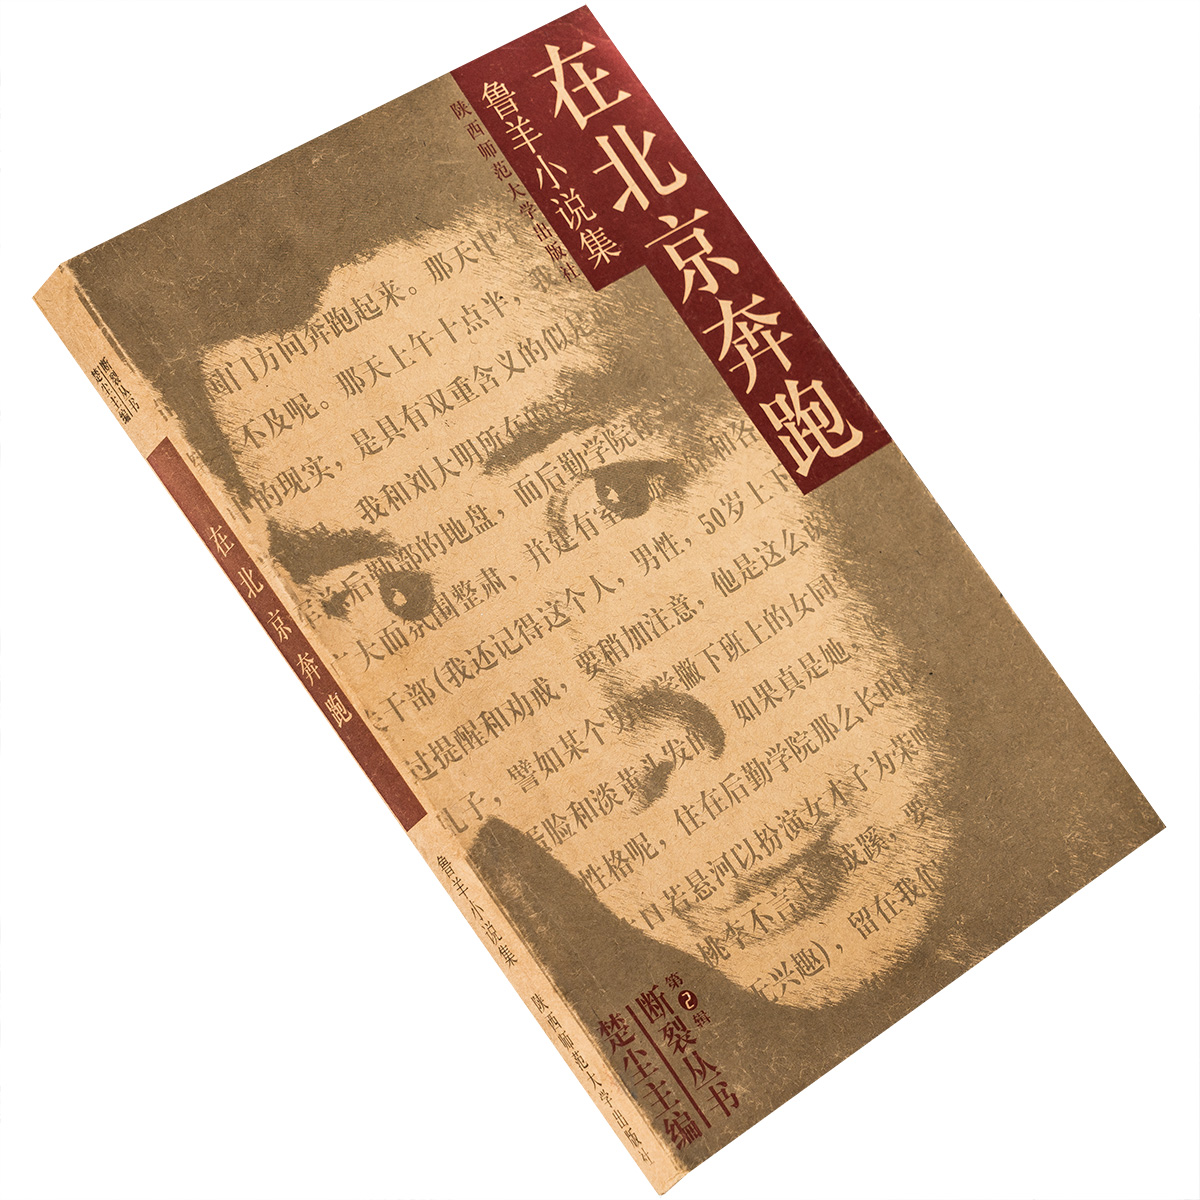 在北京奔跑 鲁羊小说集 断裂文丛 陕西师范大学出版社 正版书籍 老版